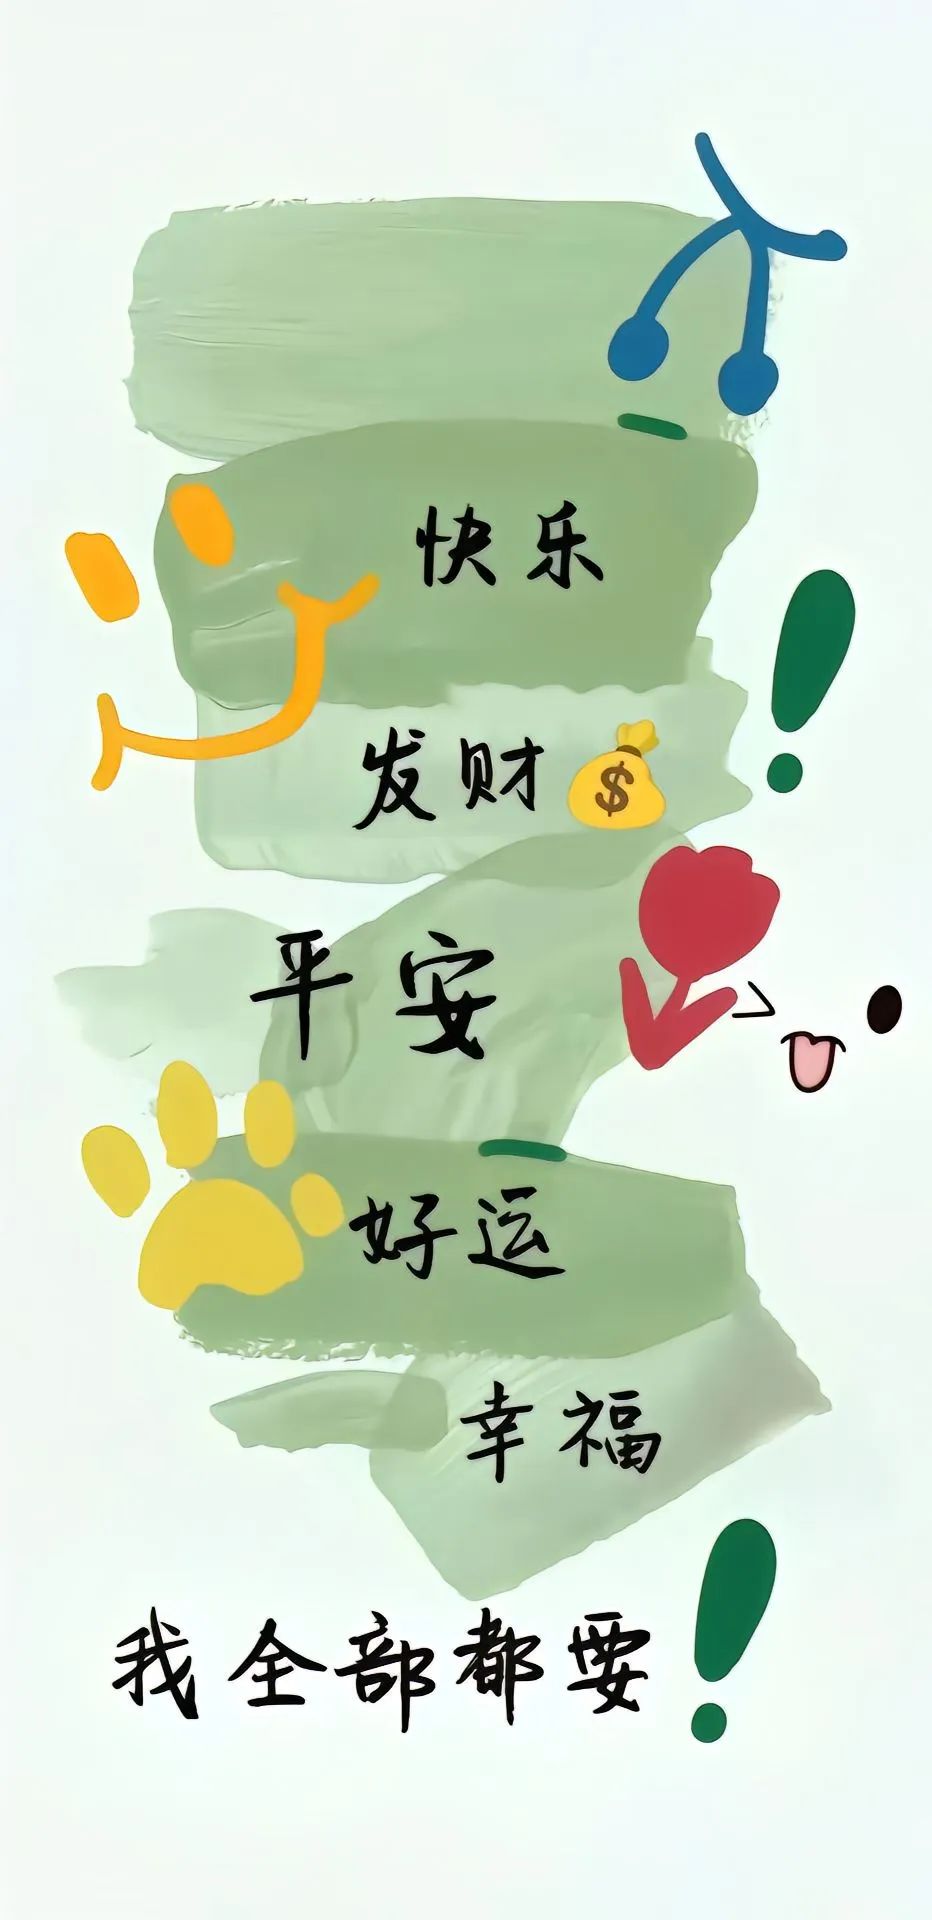 2024 新年喜庆壁纸背景图